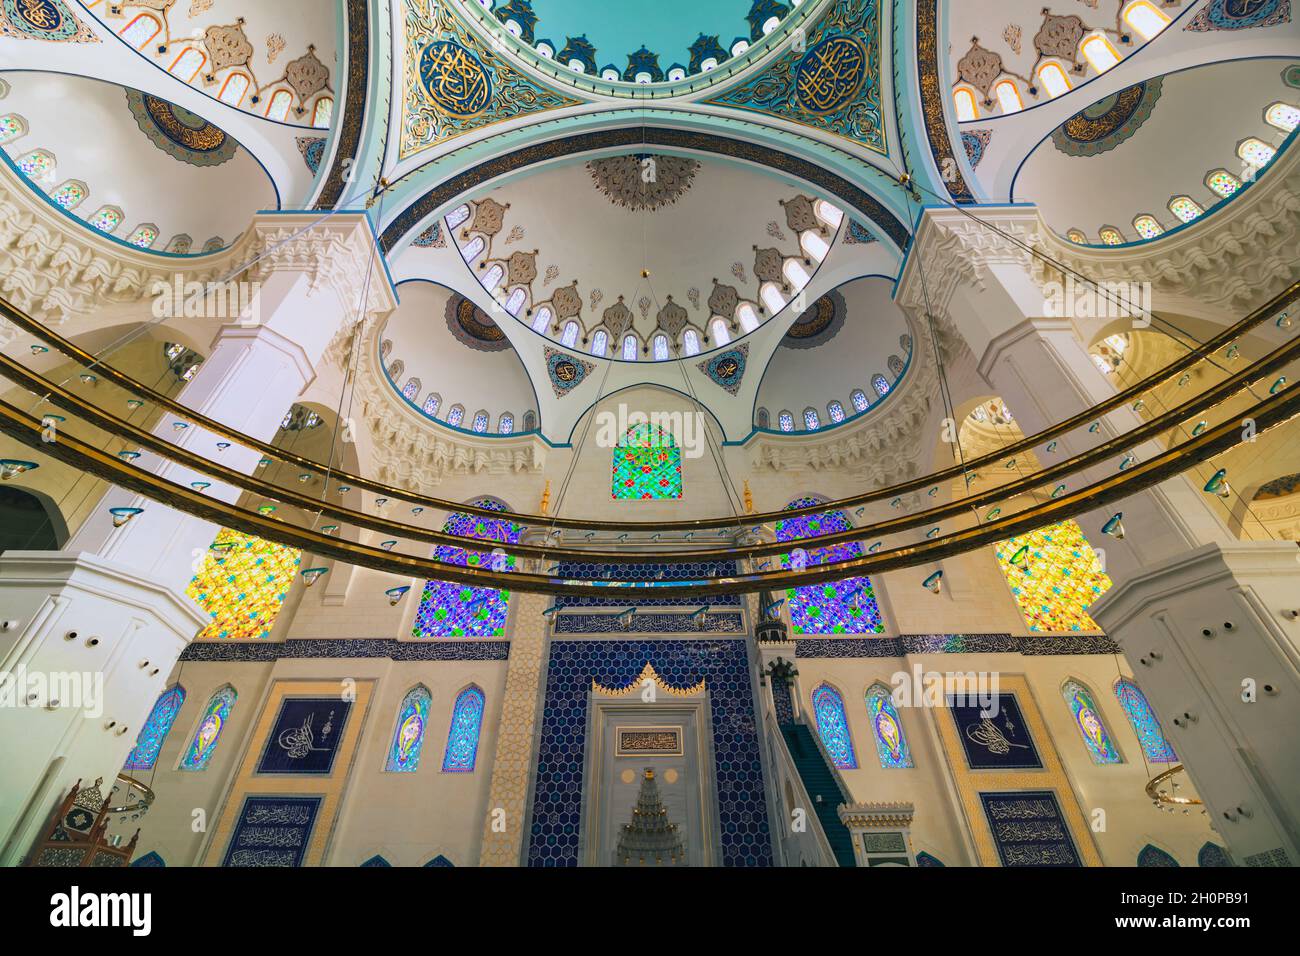 Istanbul Türkei - 9.27.2021: Innenraum der Camlica Moschee in Istanbul. Ramadan, iftar, islamisches Hintergrundbild. Die größte Moschee der Türkei. Stockfoto